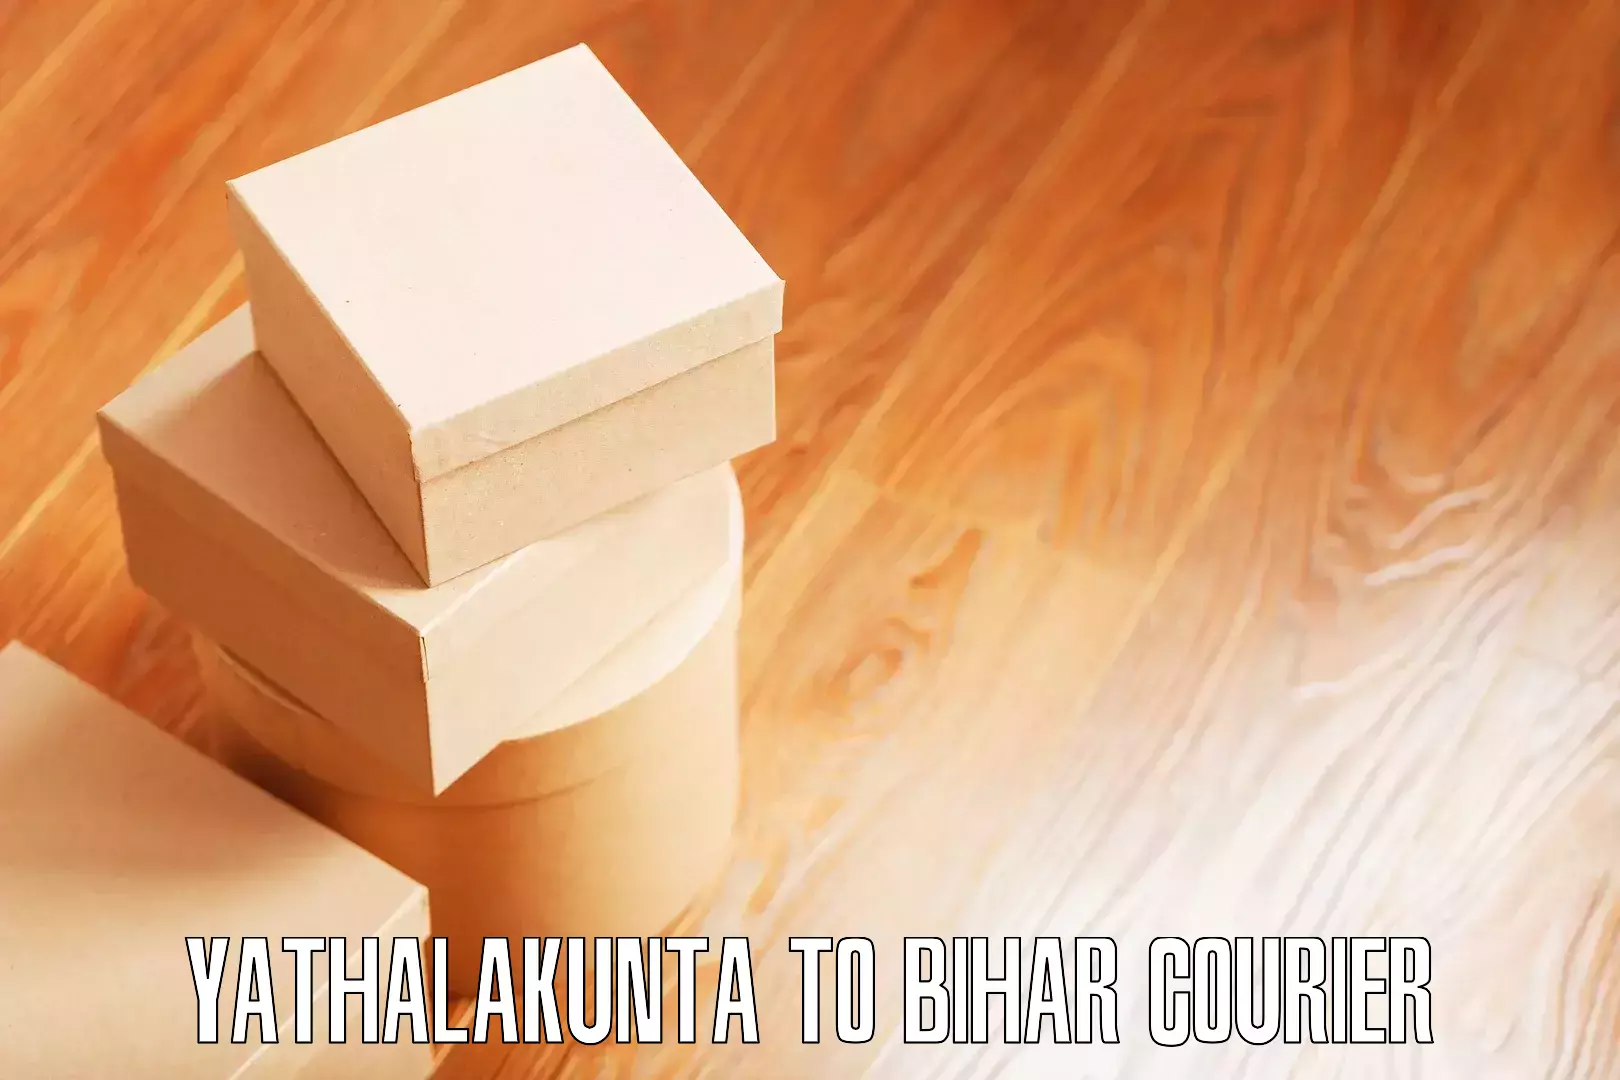 Local furniture movers Yathalakunta to Bhorey